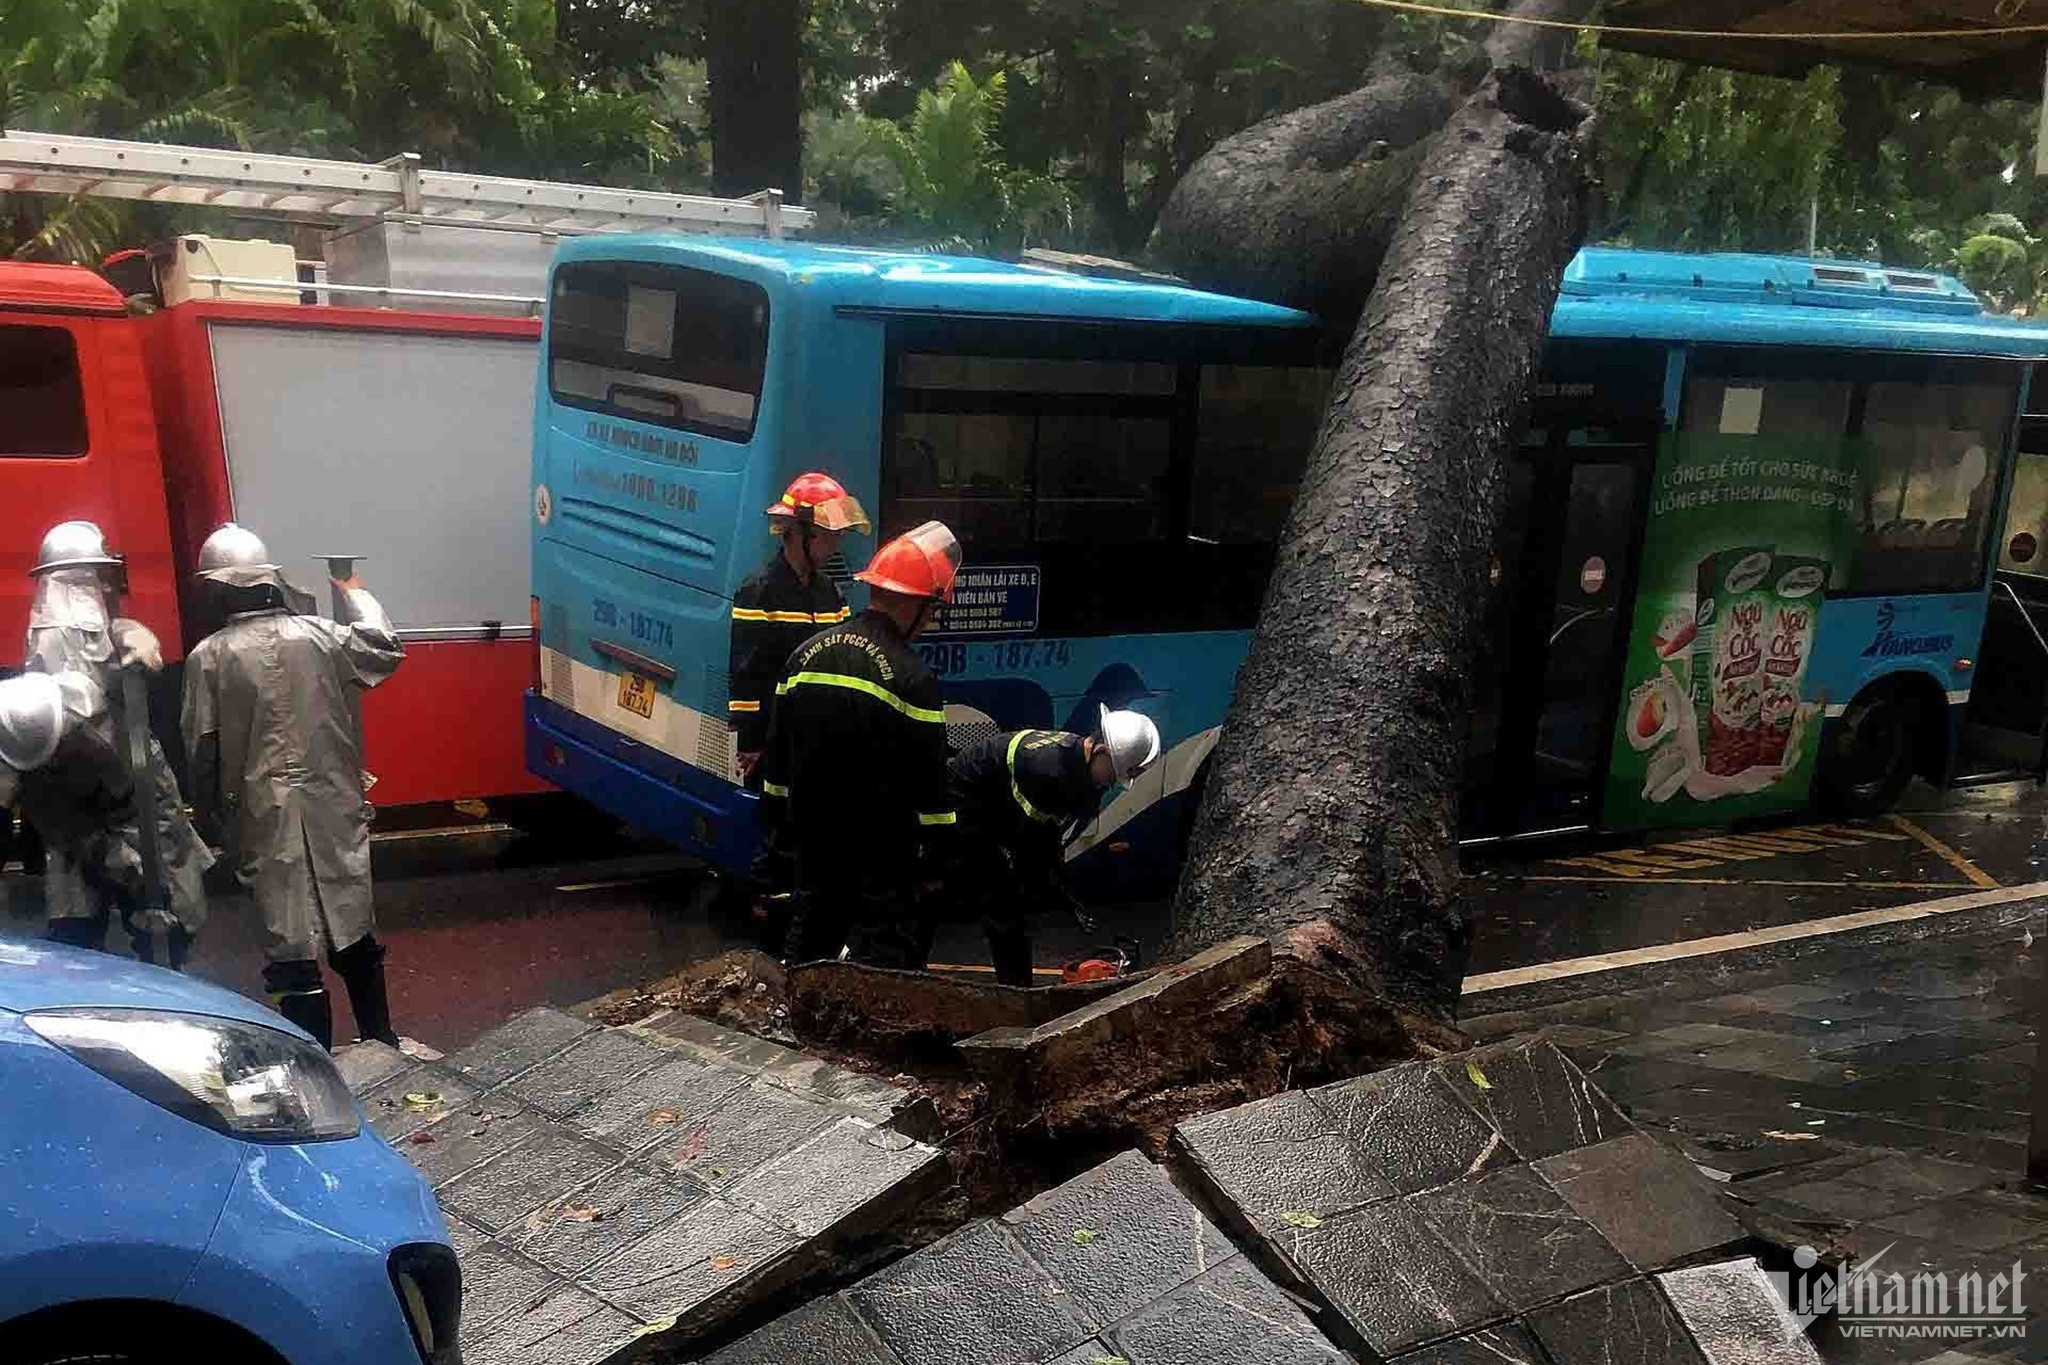 Bản tin chiều 5/8: Cây cổ thụ đè bẹp xe buýt trong mưa dông ở Hà Nội